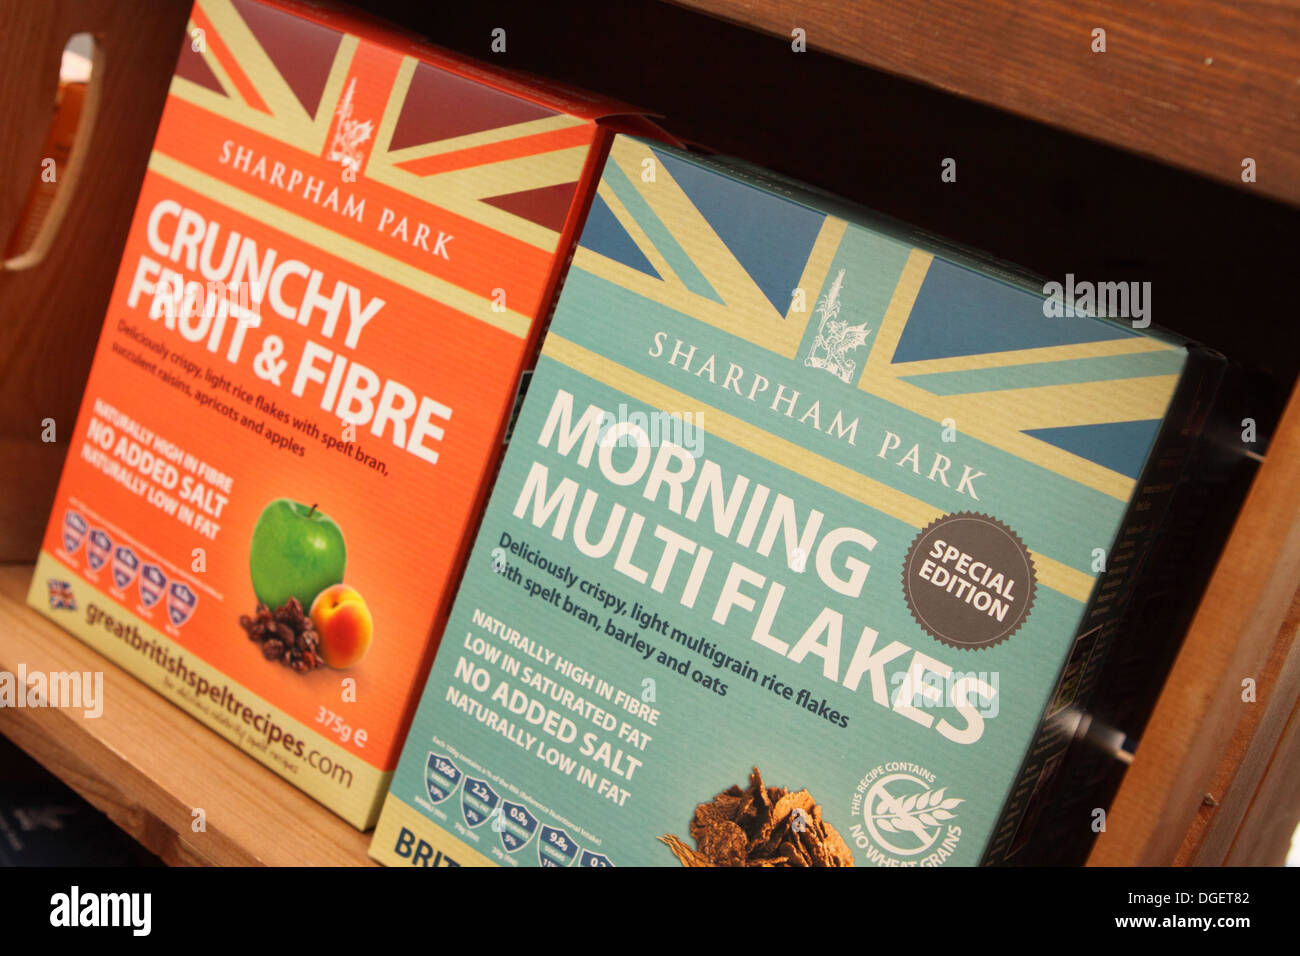 Sharpham Park cereali fatta con grano farro coltivato in Somerset, Inghilterra, Regno Unito è un frumento prodotto gratuito Foto Stock